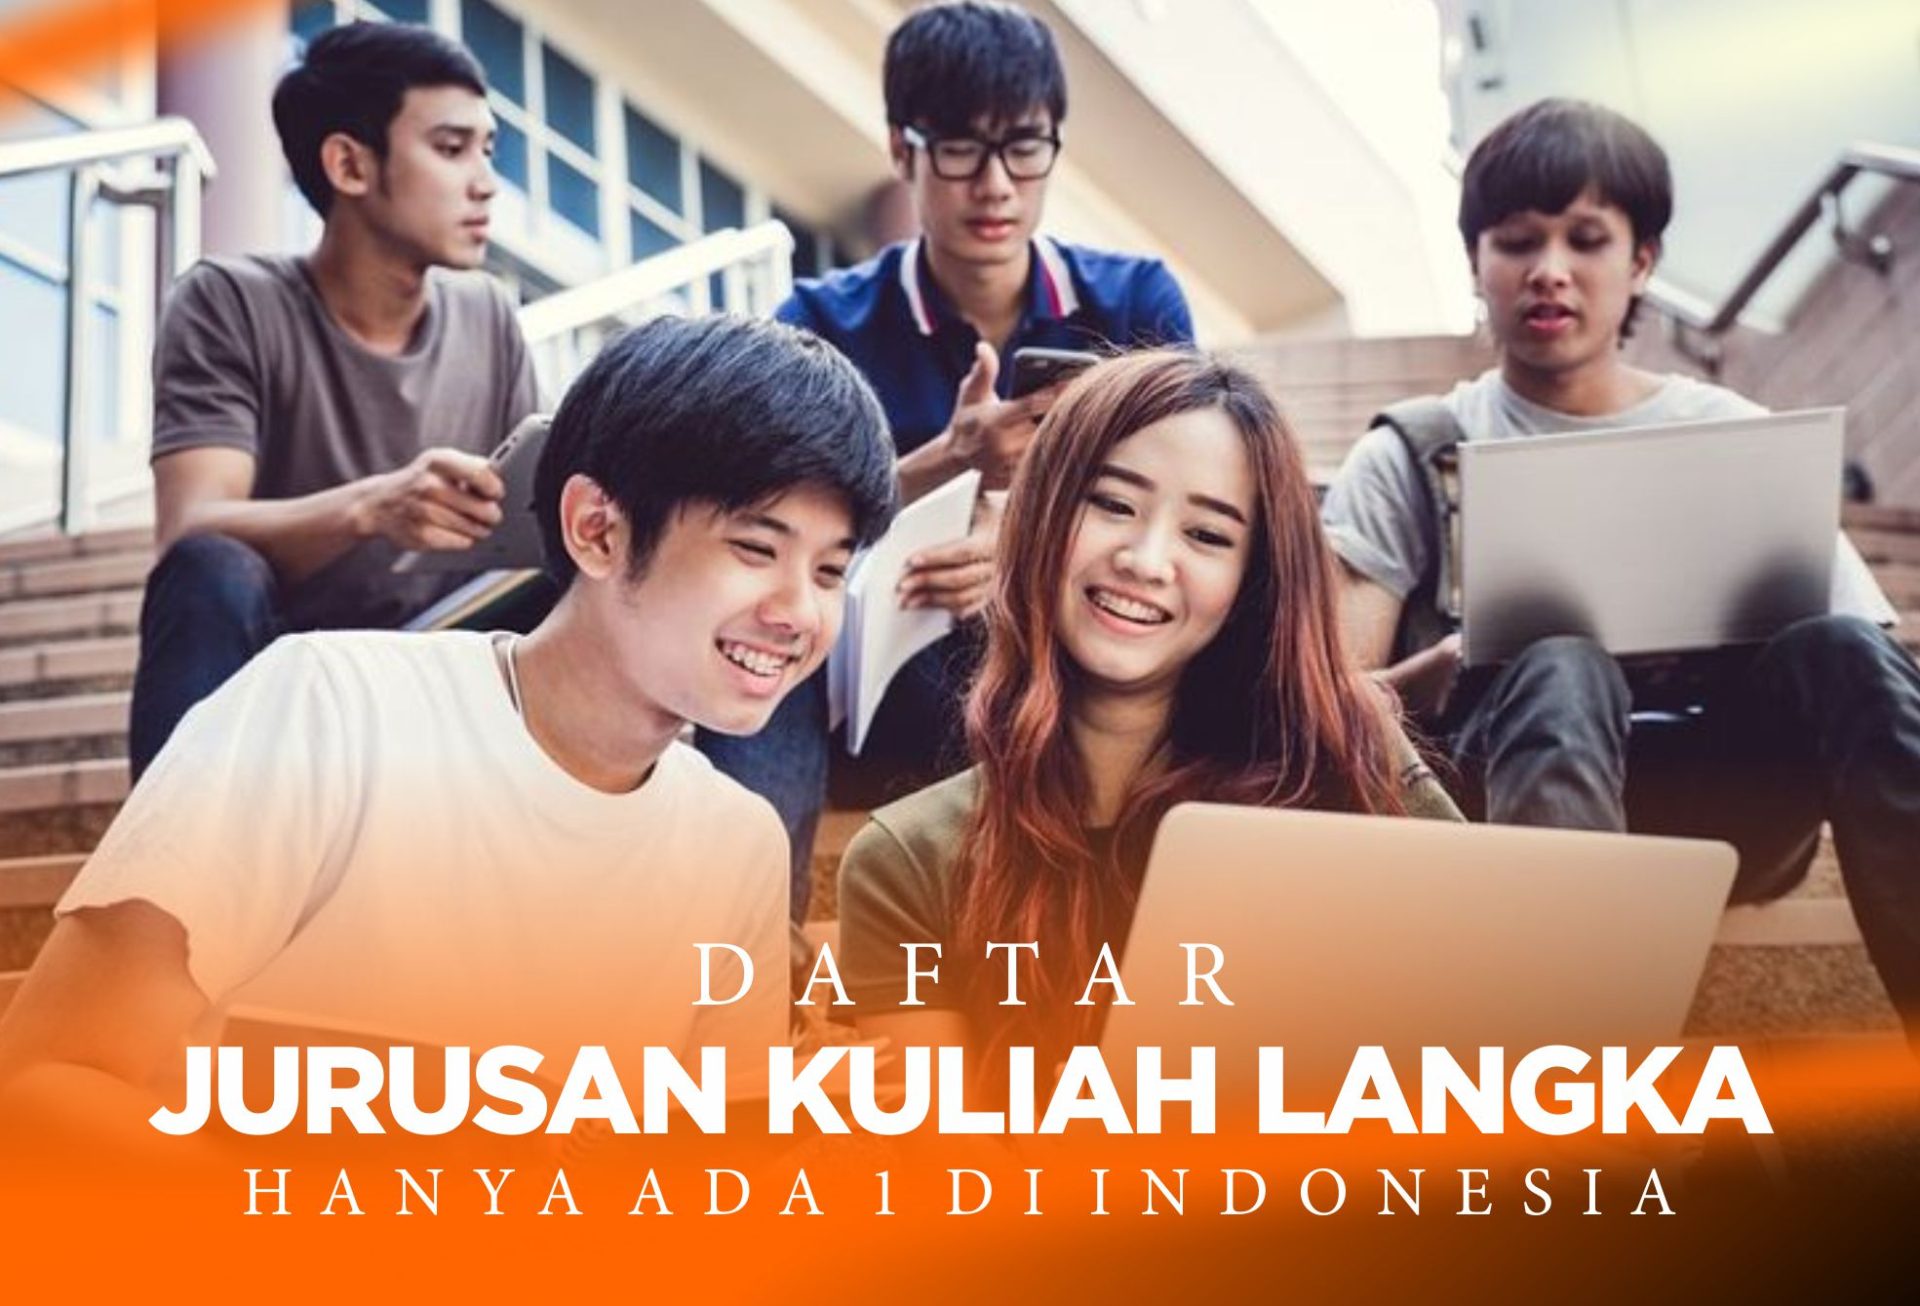 Jurusan Kuliah Langka Hanya Ada 1 di Indonesia